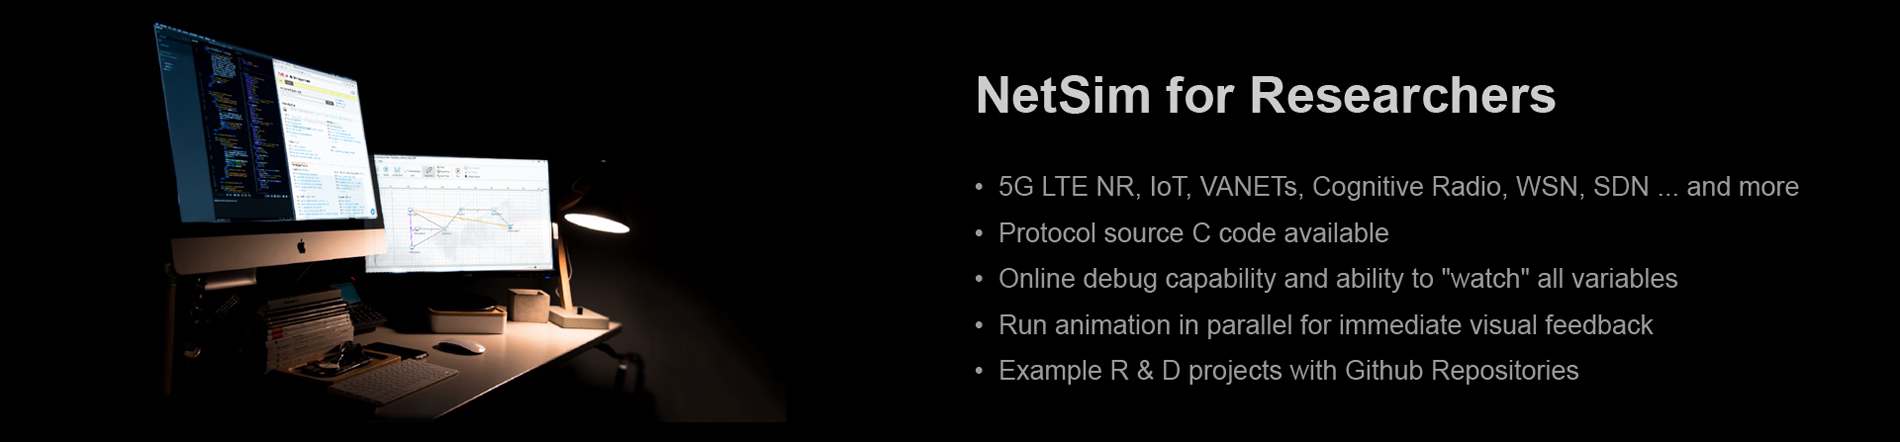 NetSim Standard: for Reseachers